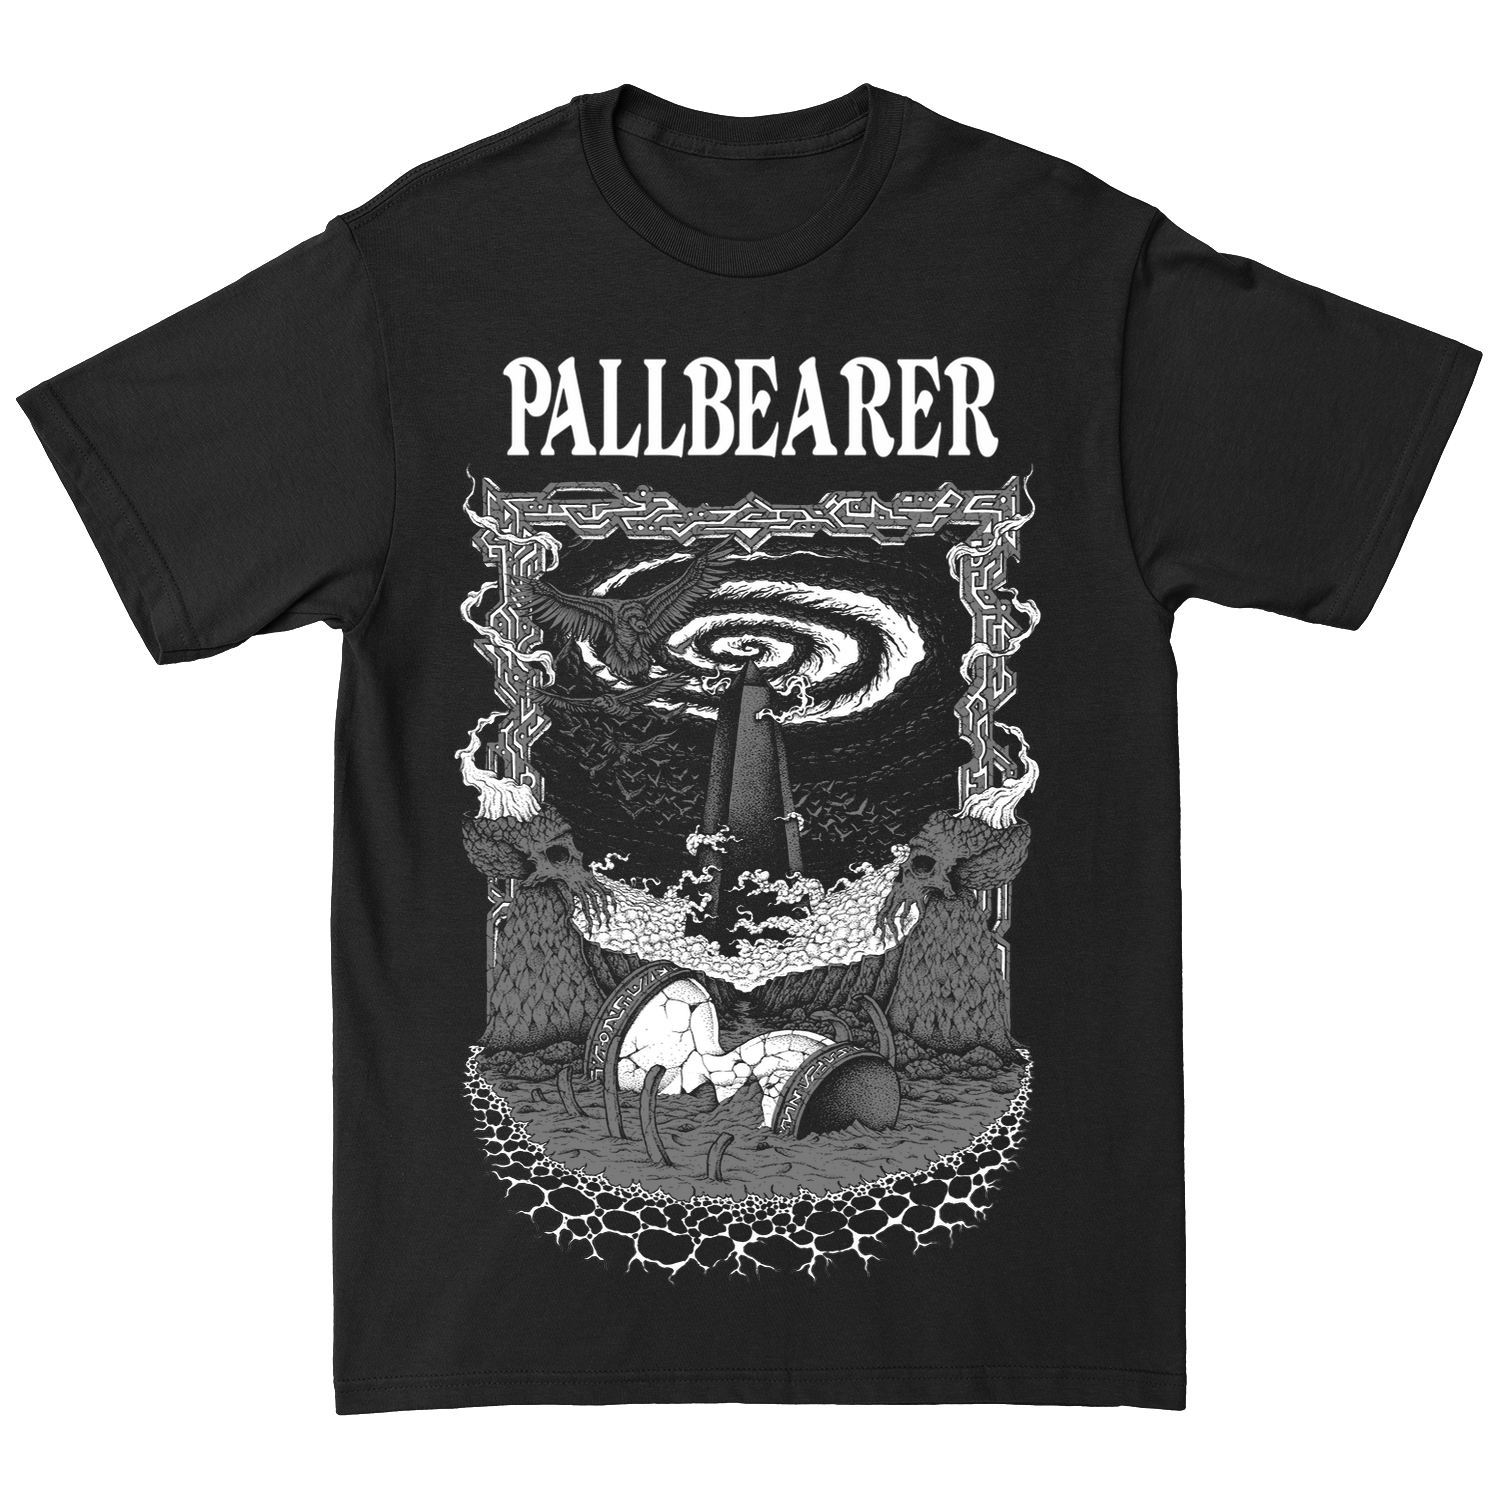 PALLBEARER "Silver Wings" Black T-Shirt